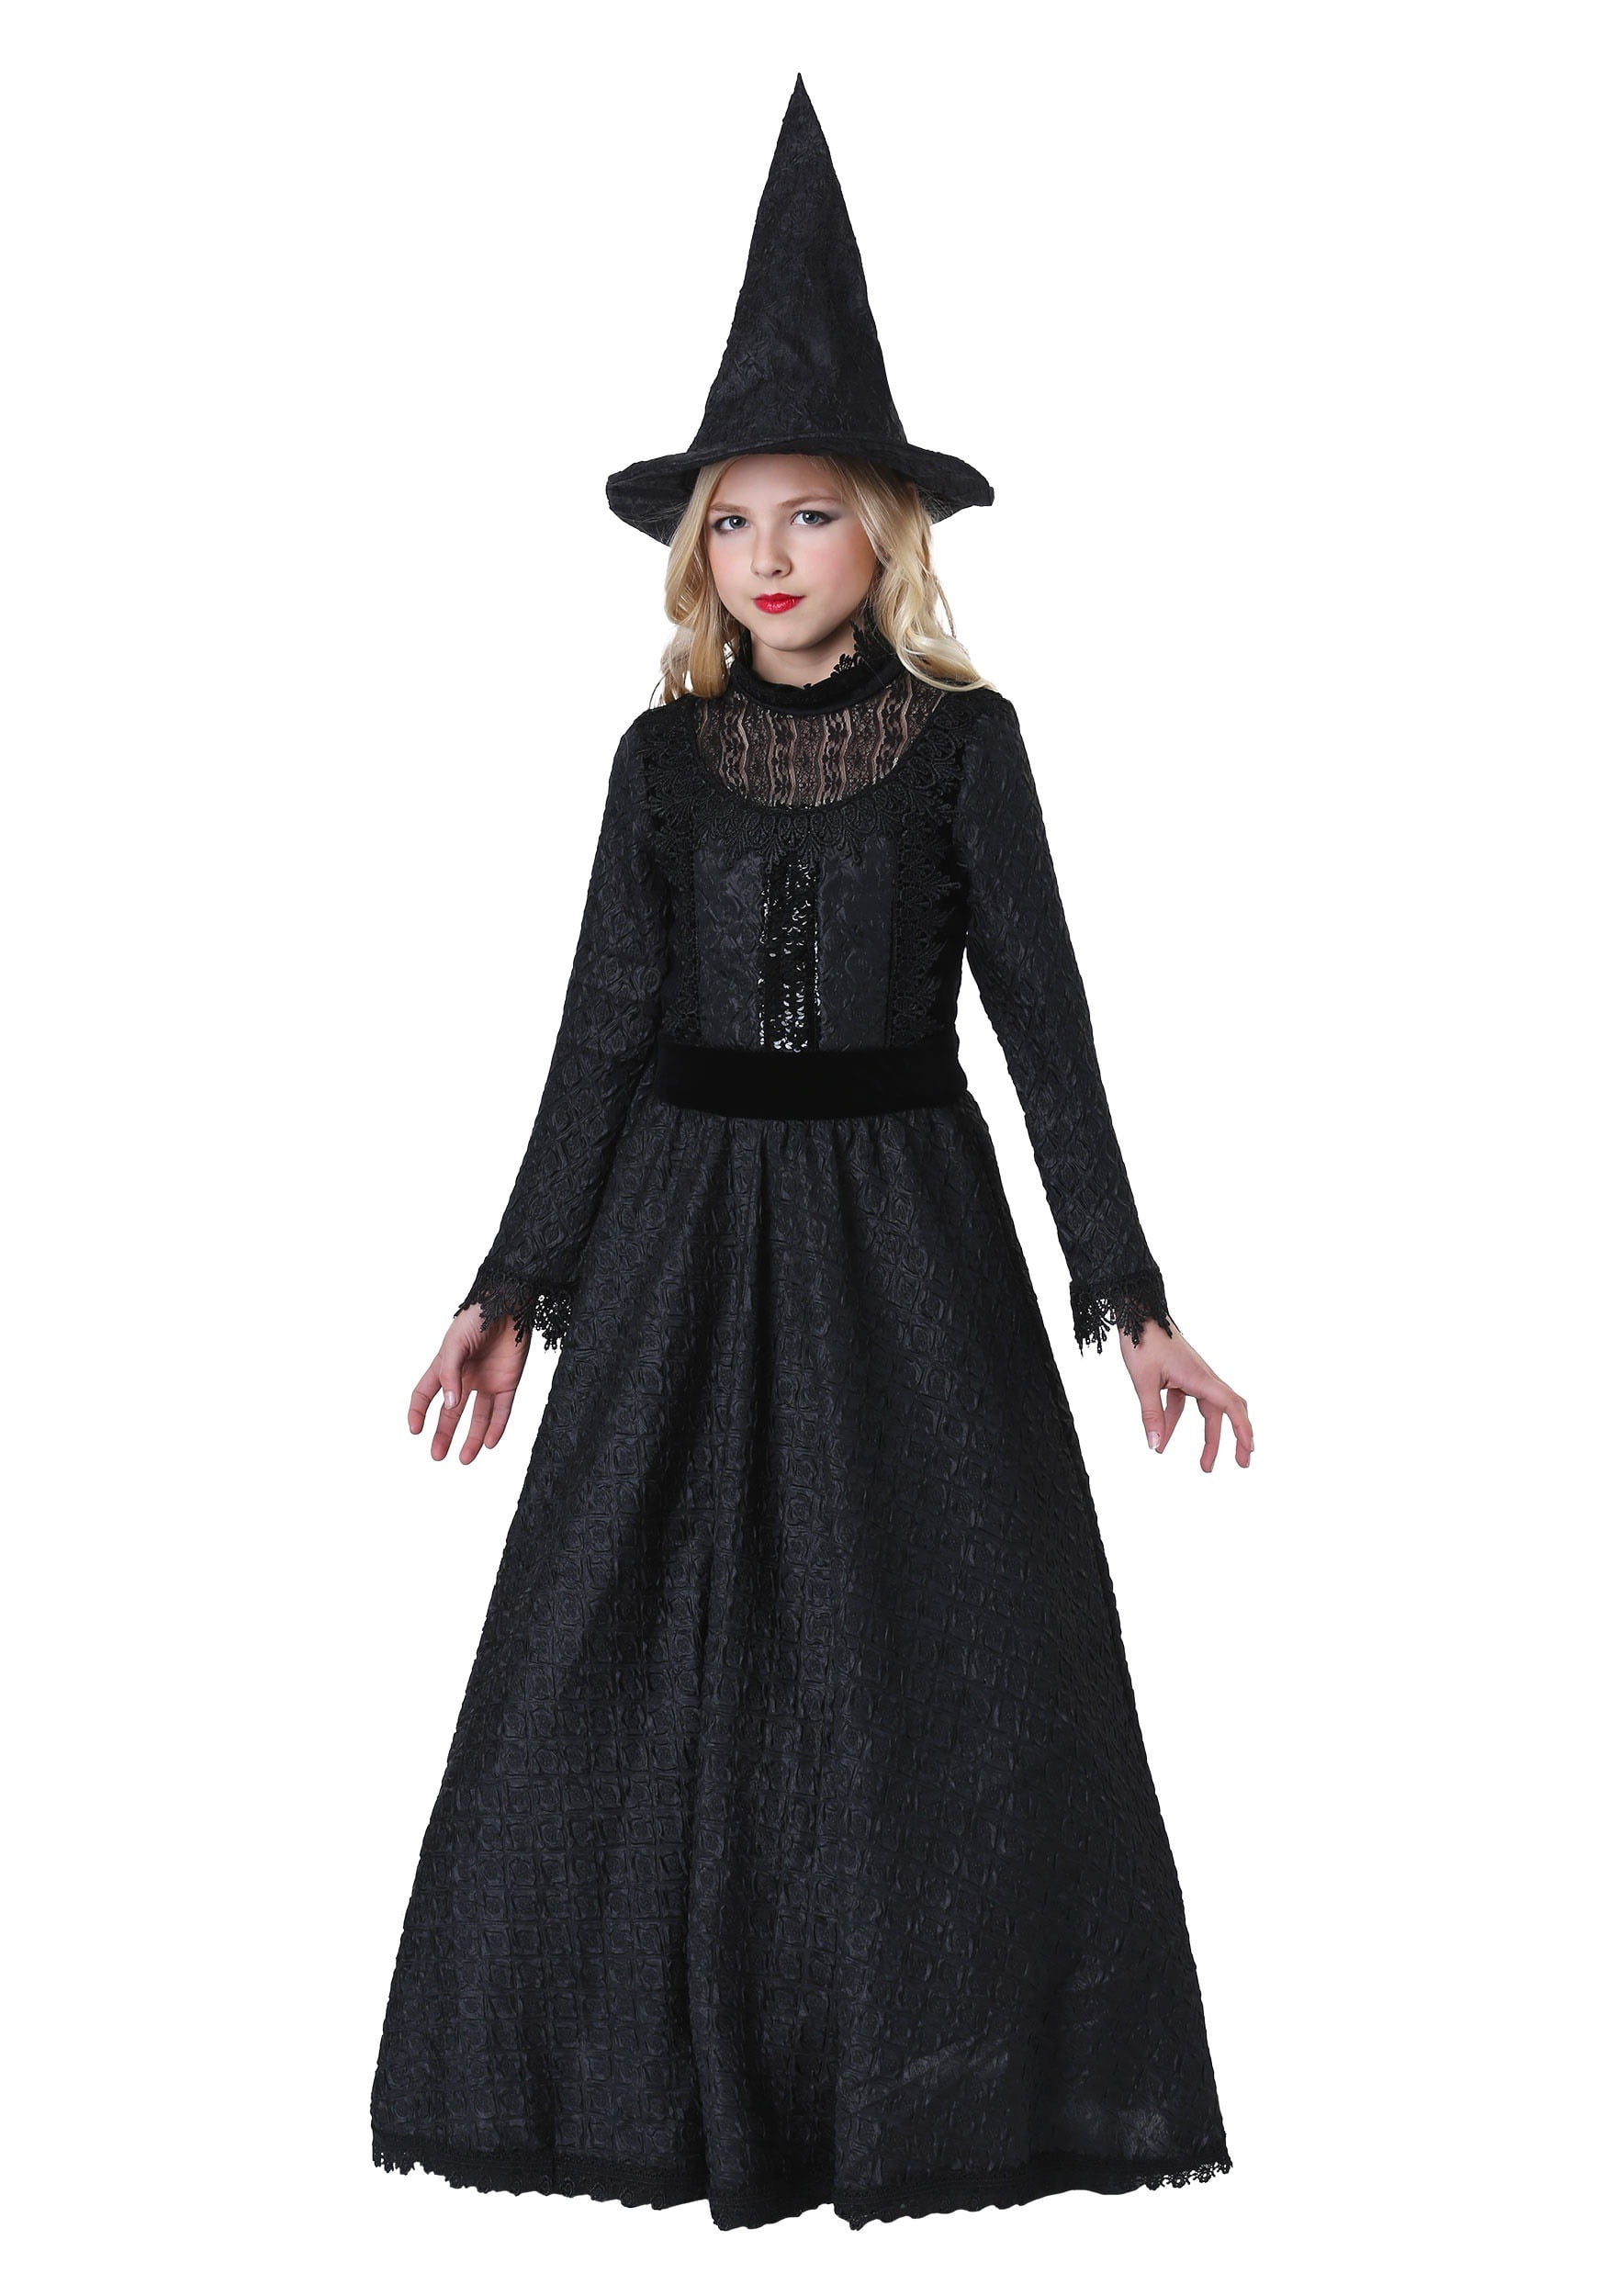 Girls Deluxe Dark Witch Costume - Walmart.com